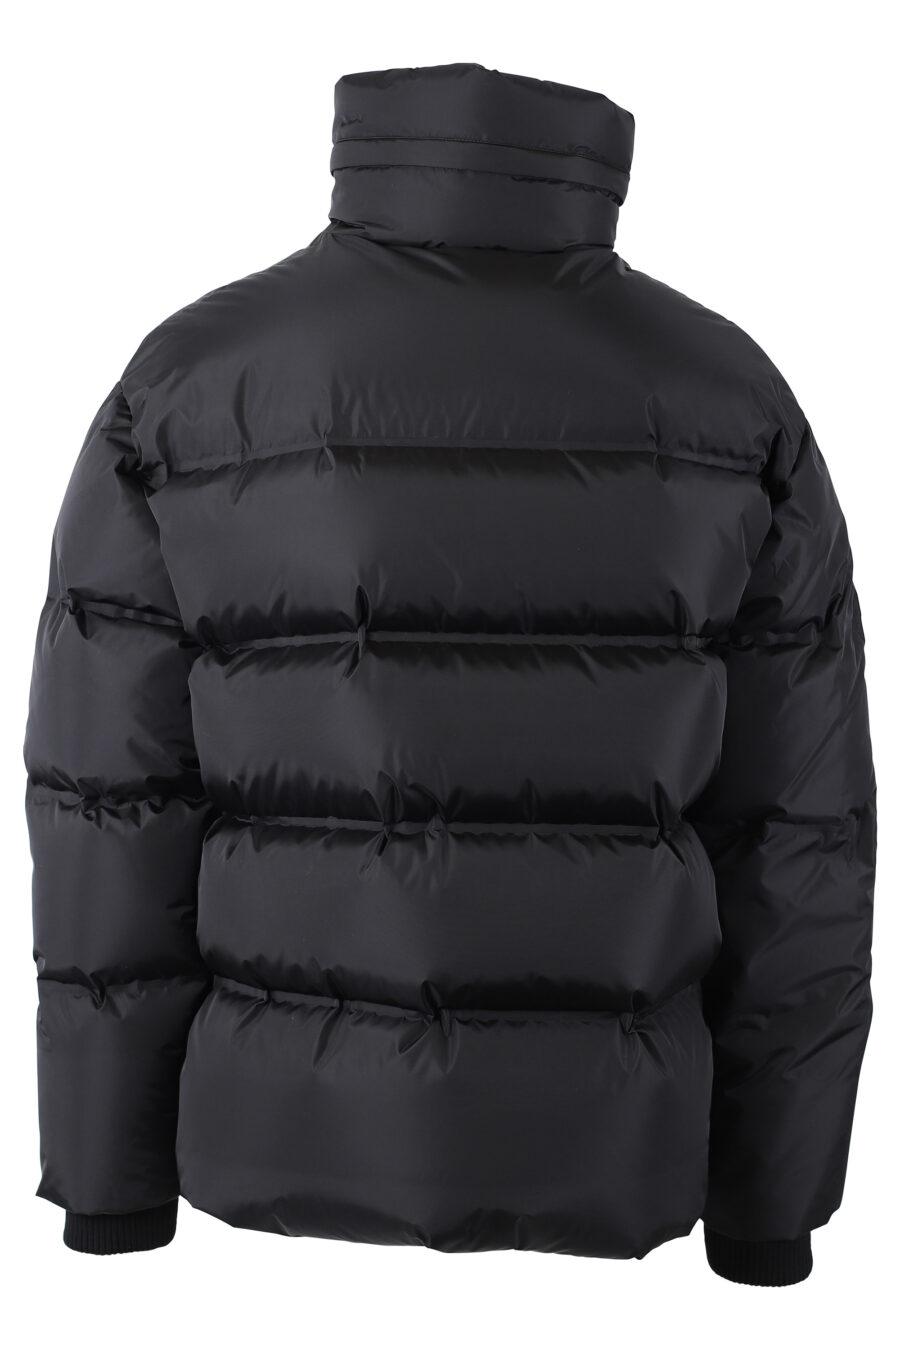 Black jacket with "dsq2" maxilogo on velcro - IMG 1099